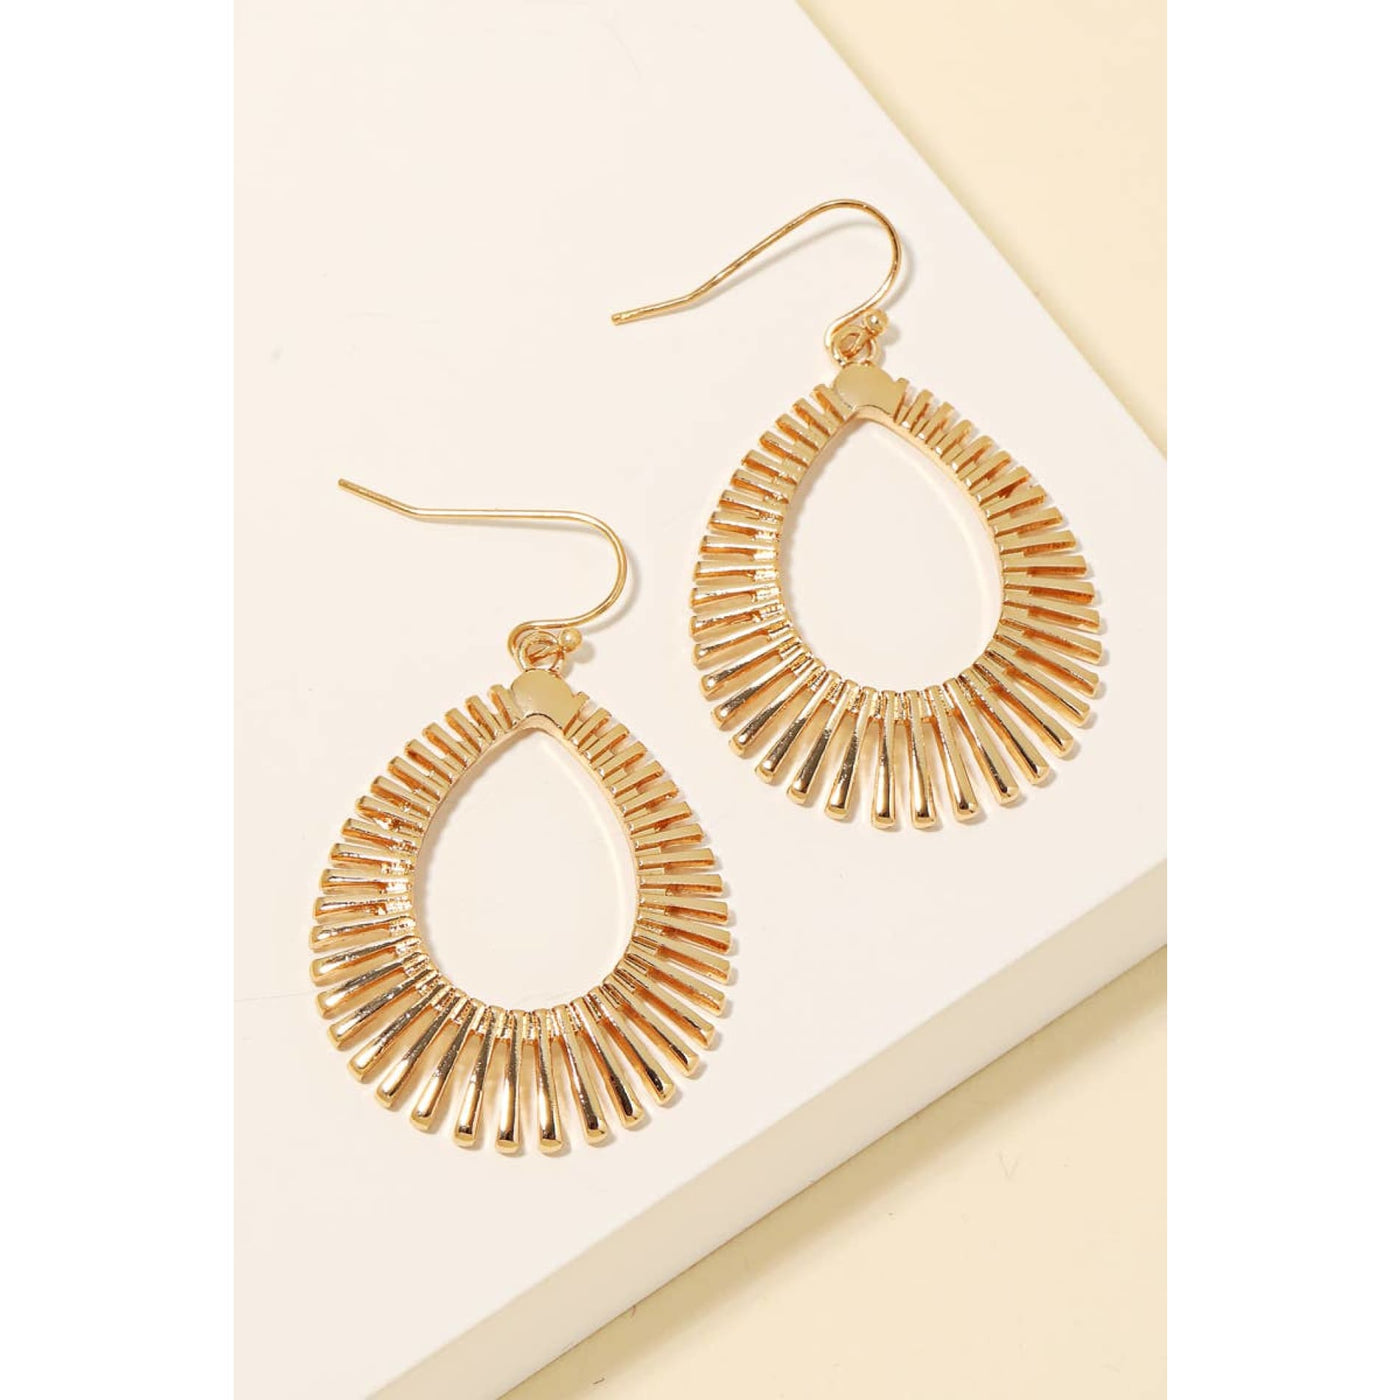 Metallic Tear Dangle Hook Earrings - Gold - 190 Jewelry